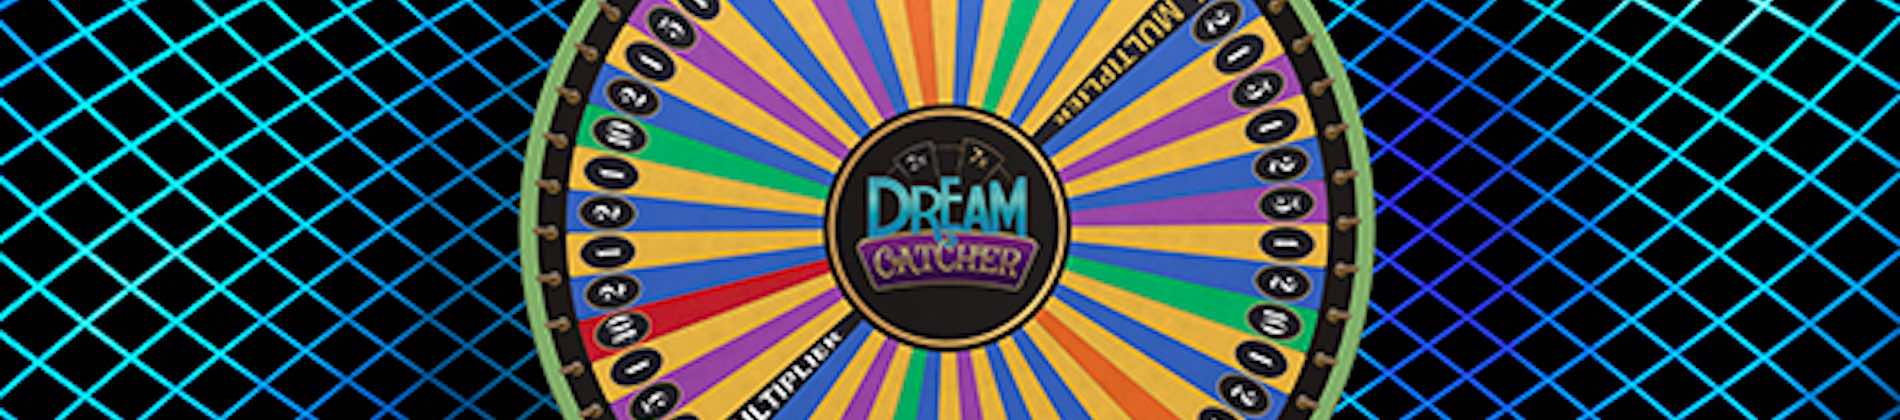 Dream Catcher Game Wheel